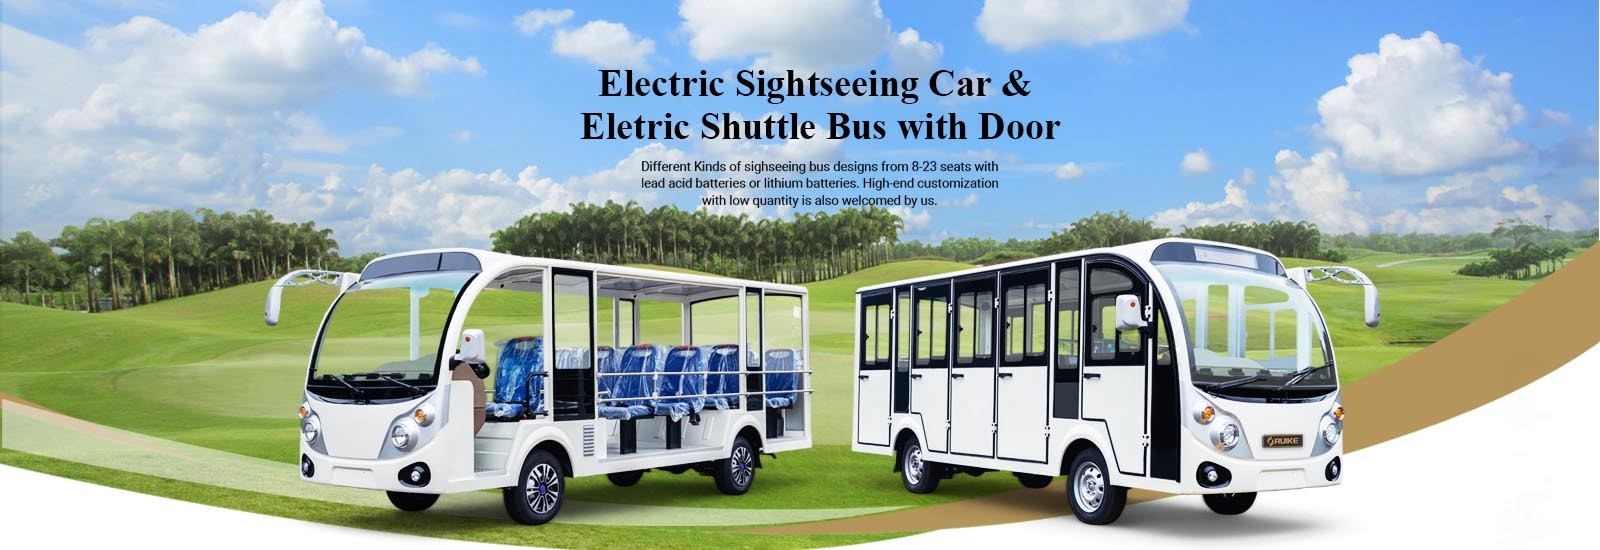 Servicio de autobús eléctrico